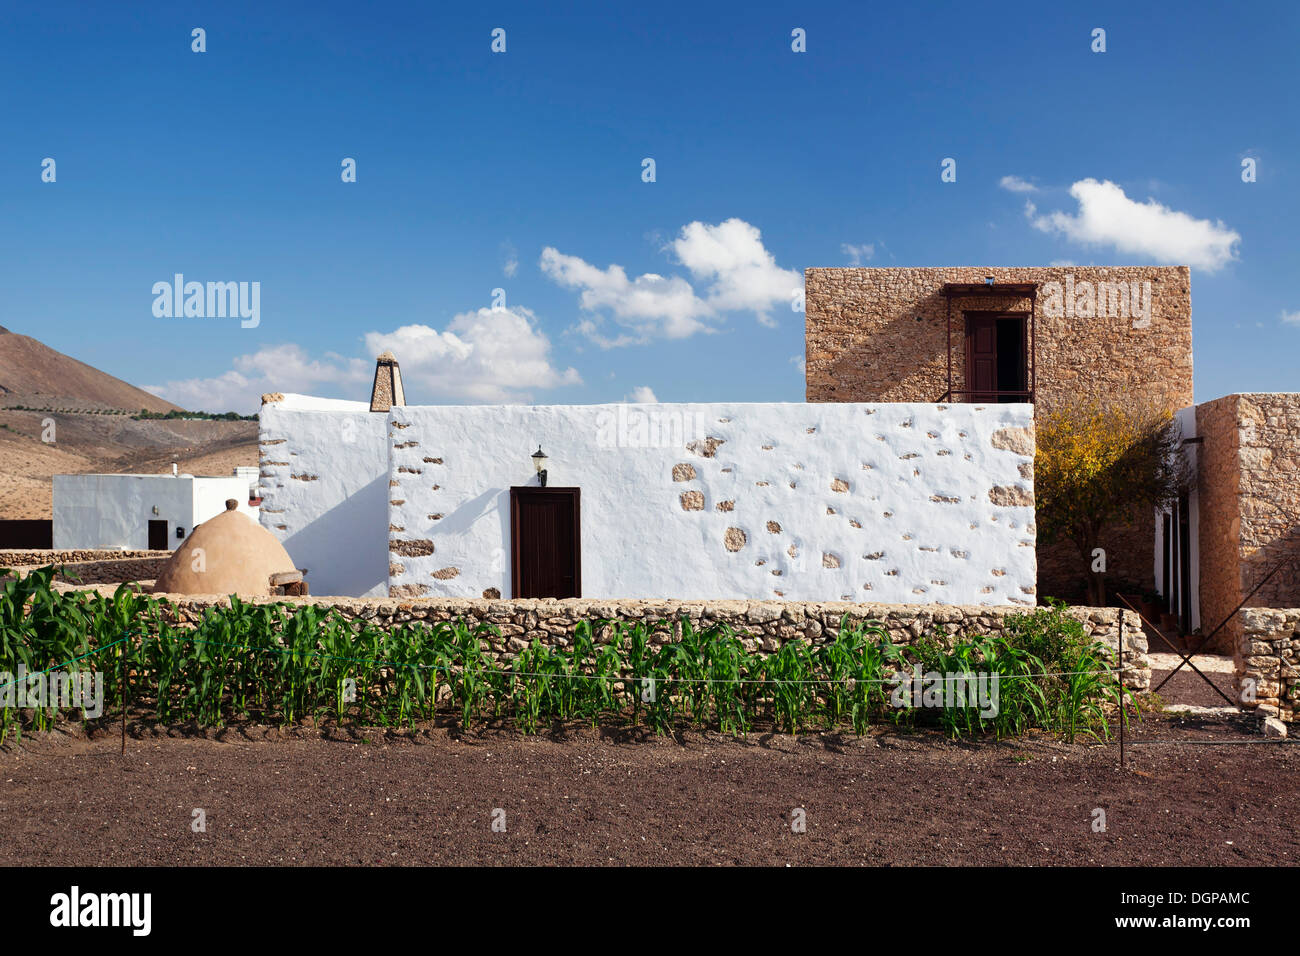 Centro de Interpretacion de los Molinos, windmill museum, Tiscamanita, Fuerteventura, Canary Islands, Spain Stock Photo